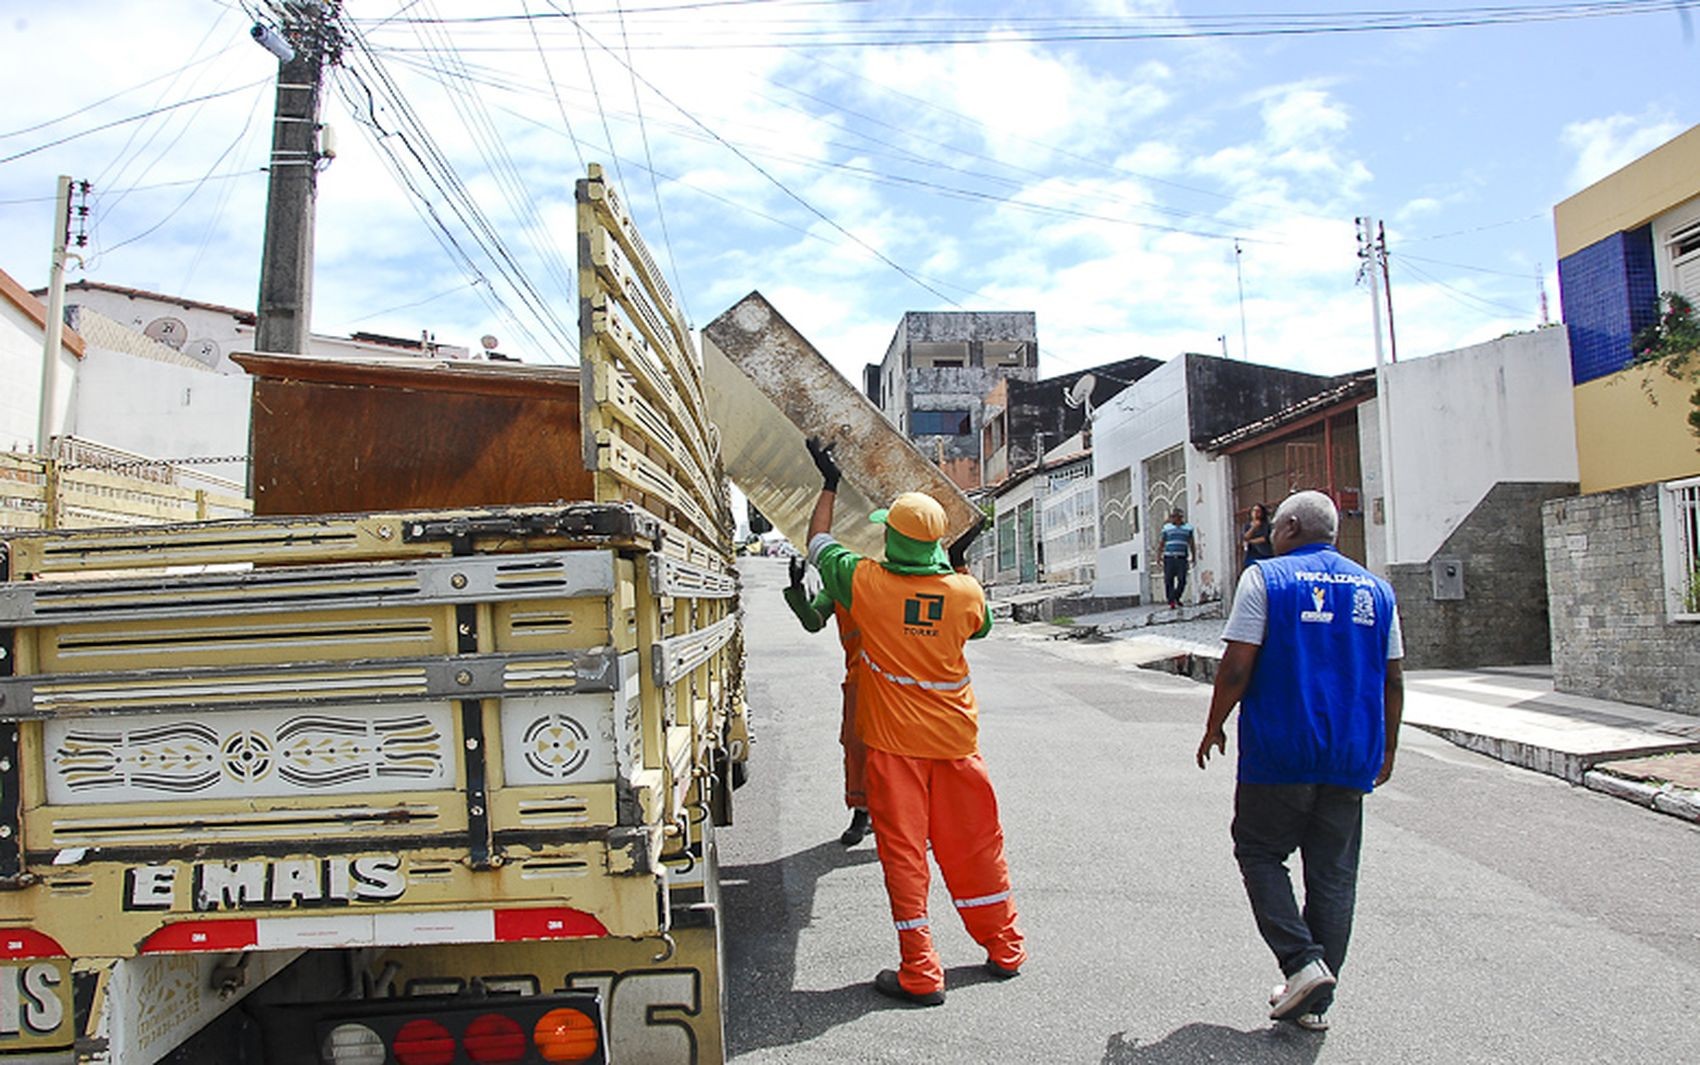 Serviço gratuito coleta material sem serventia em Aracaju; confira bairros